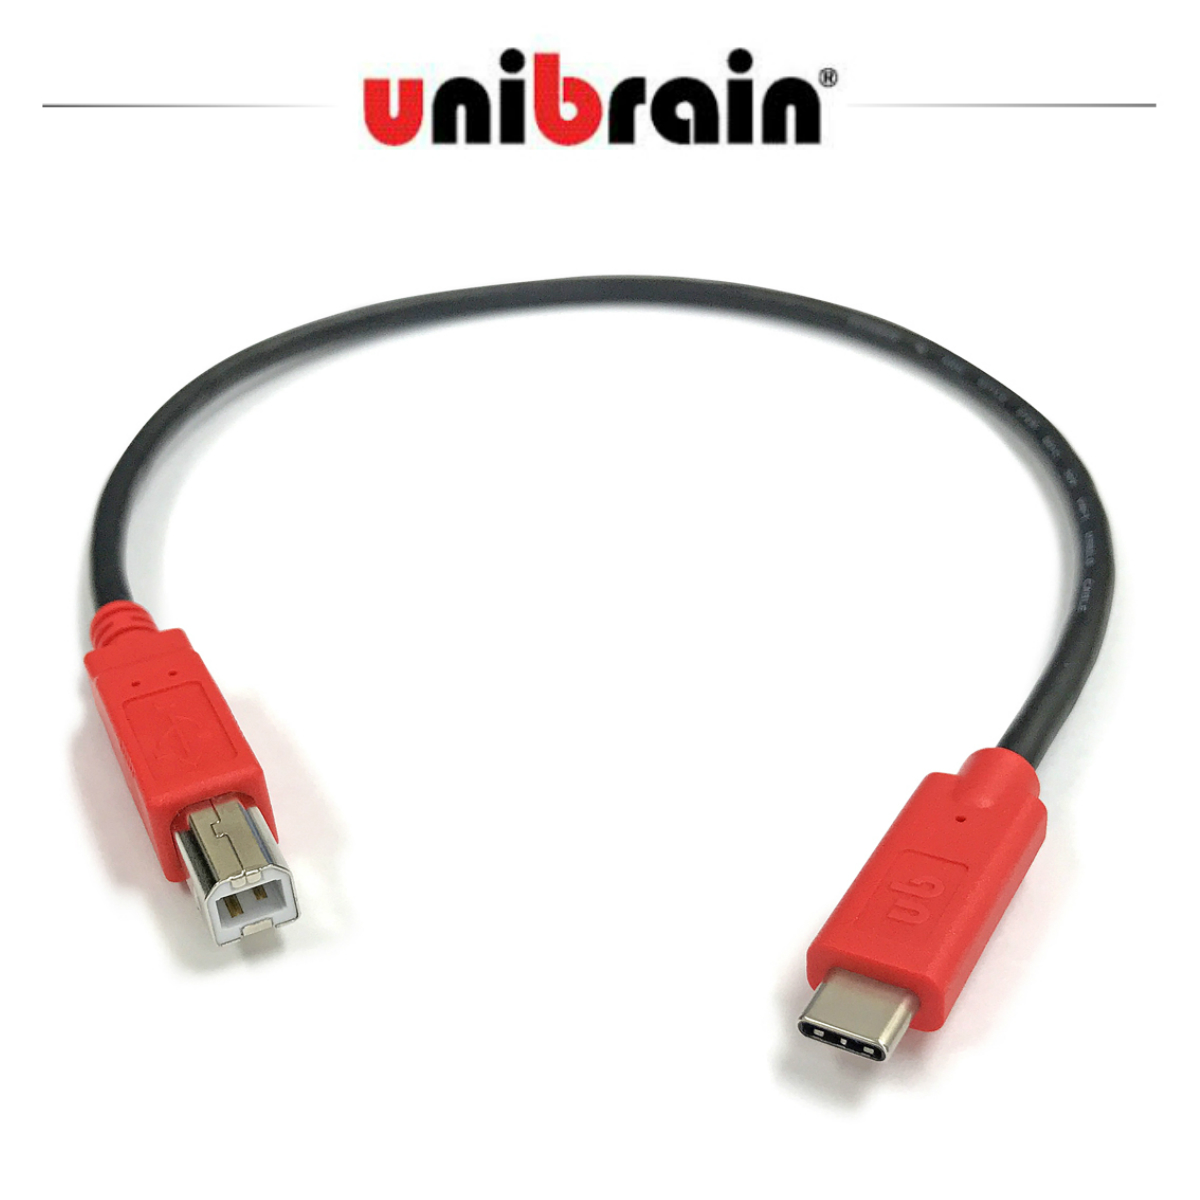 春新作の プロケーブル unibrain USB 2.0 プリンター用 ケーブルケーブル長3.6m